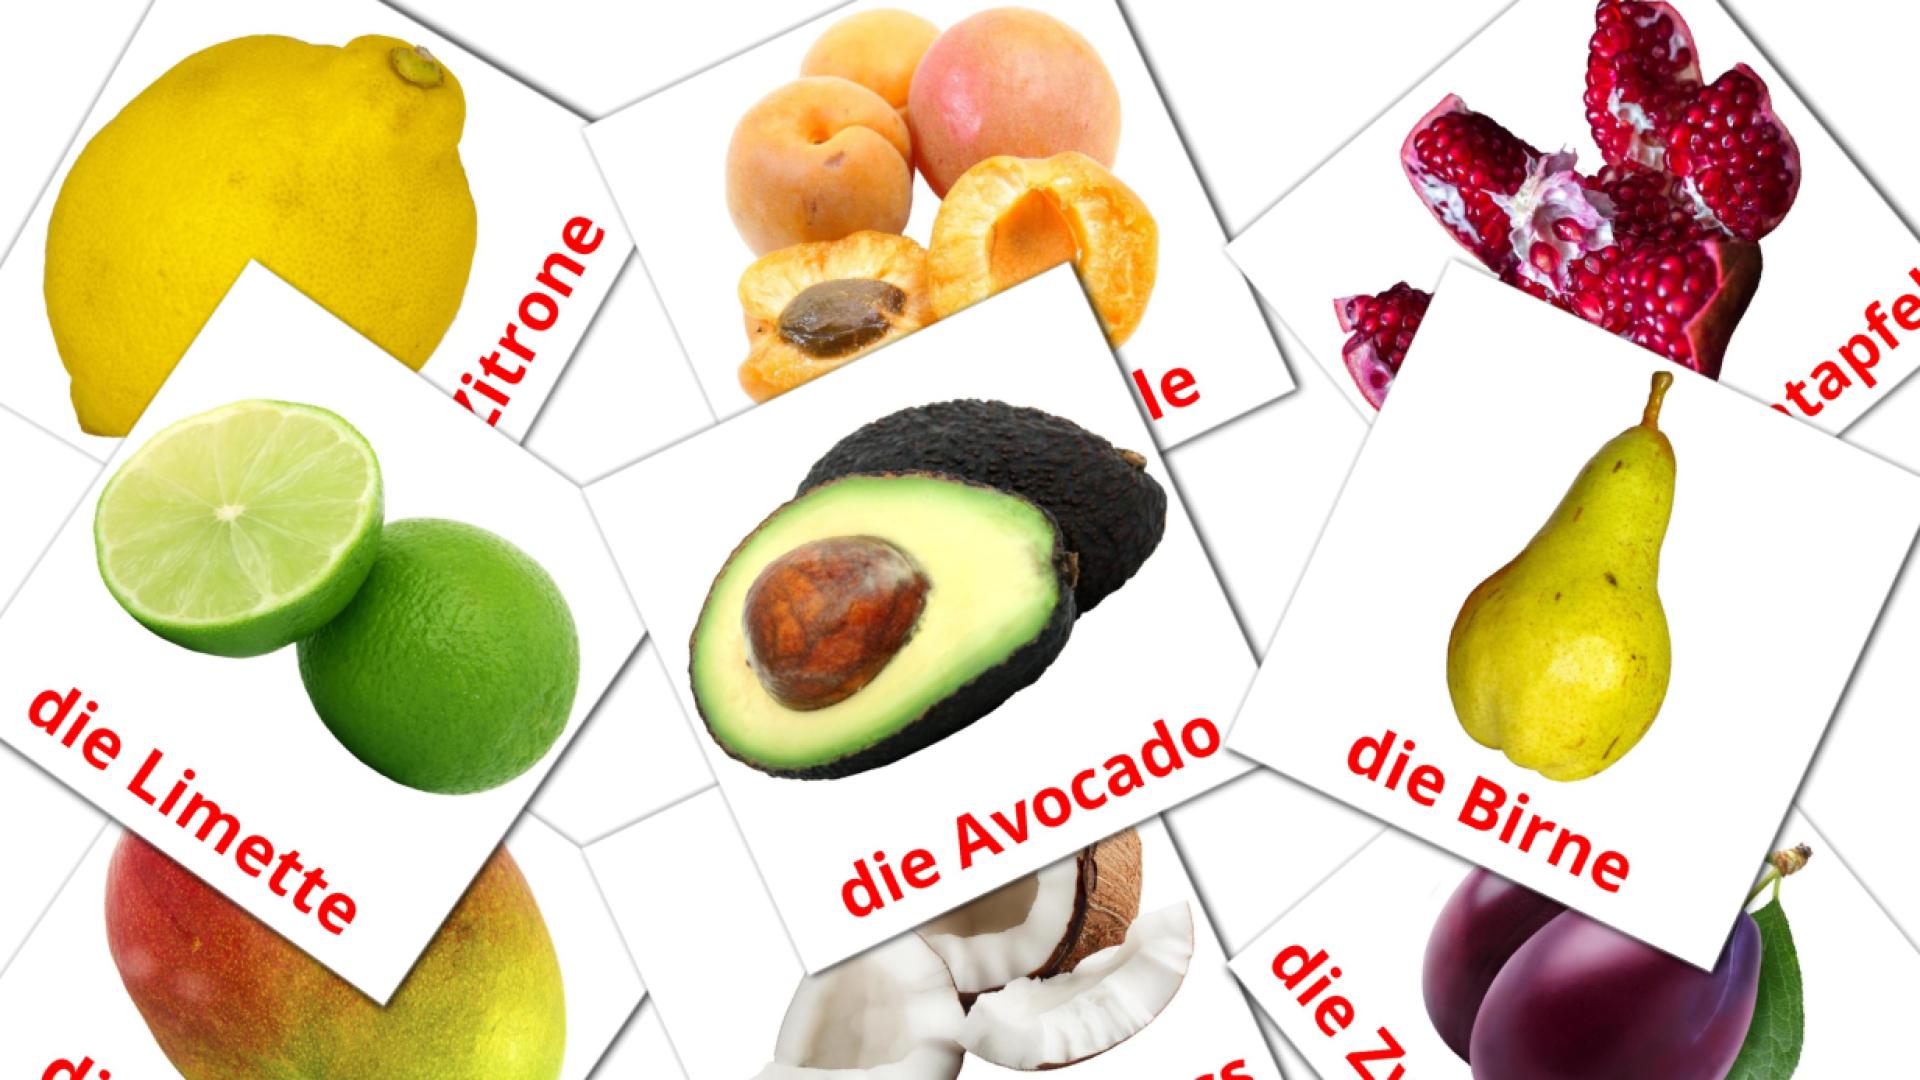 Les Fruits - cartes de vocabulaire allemand